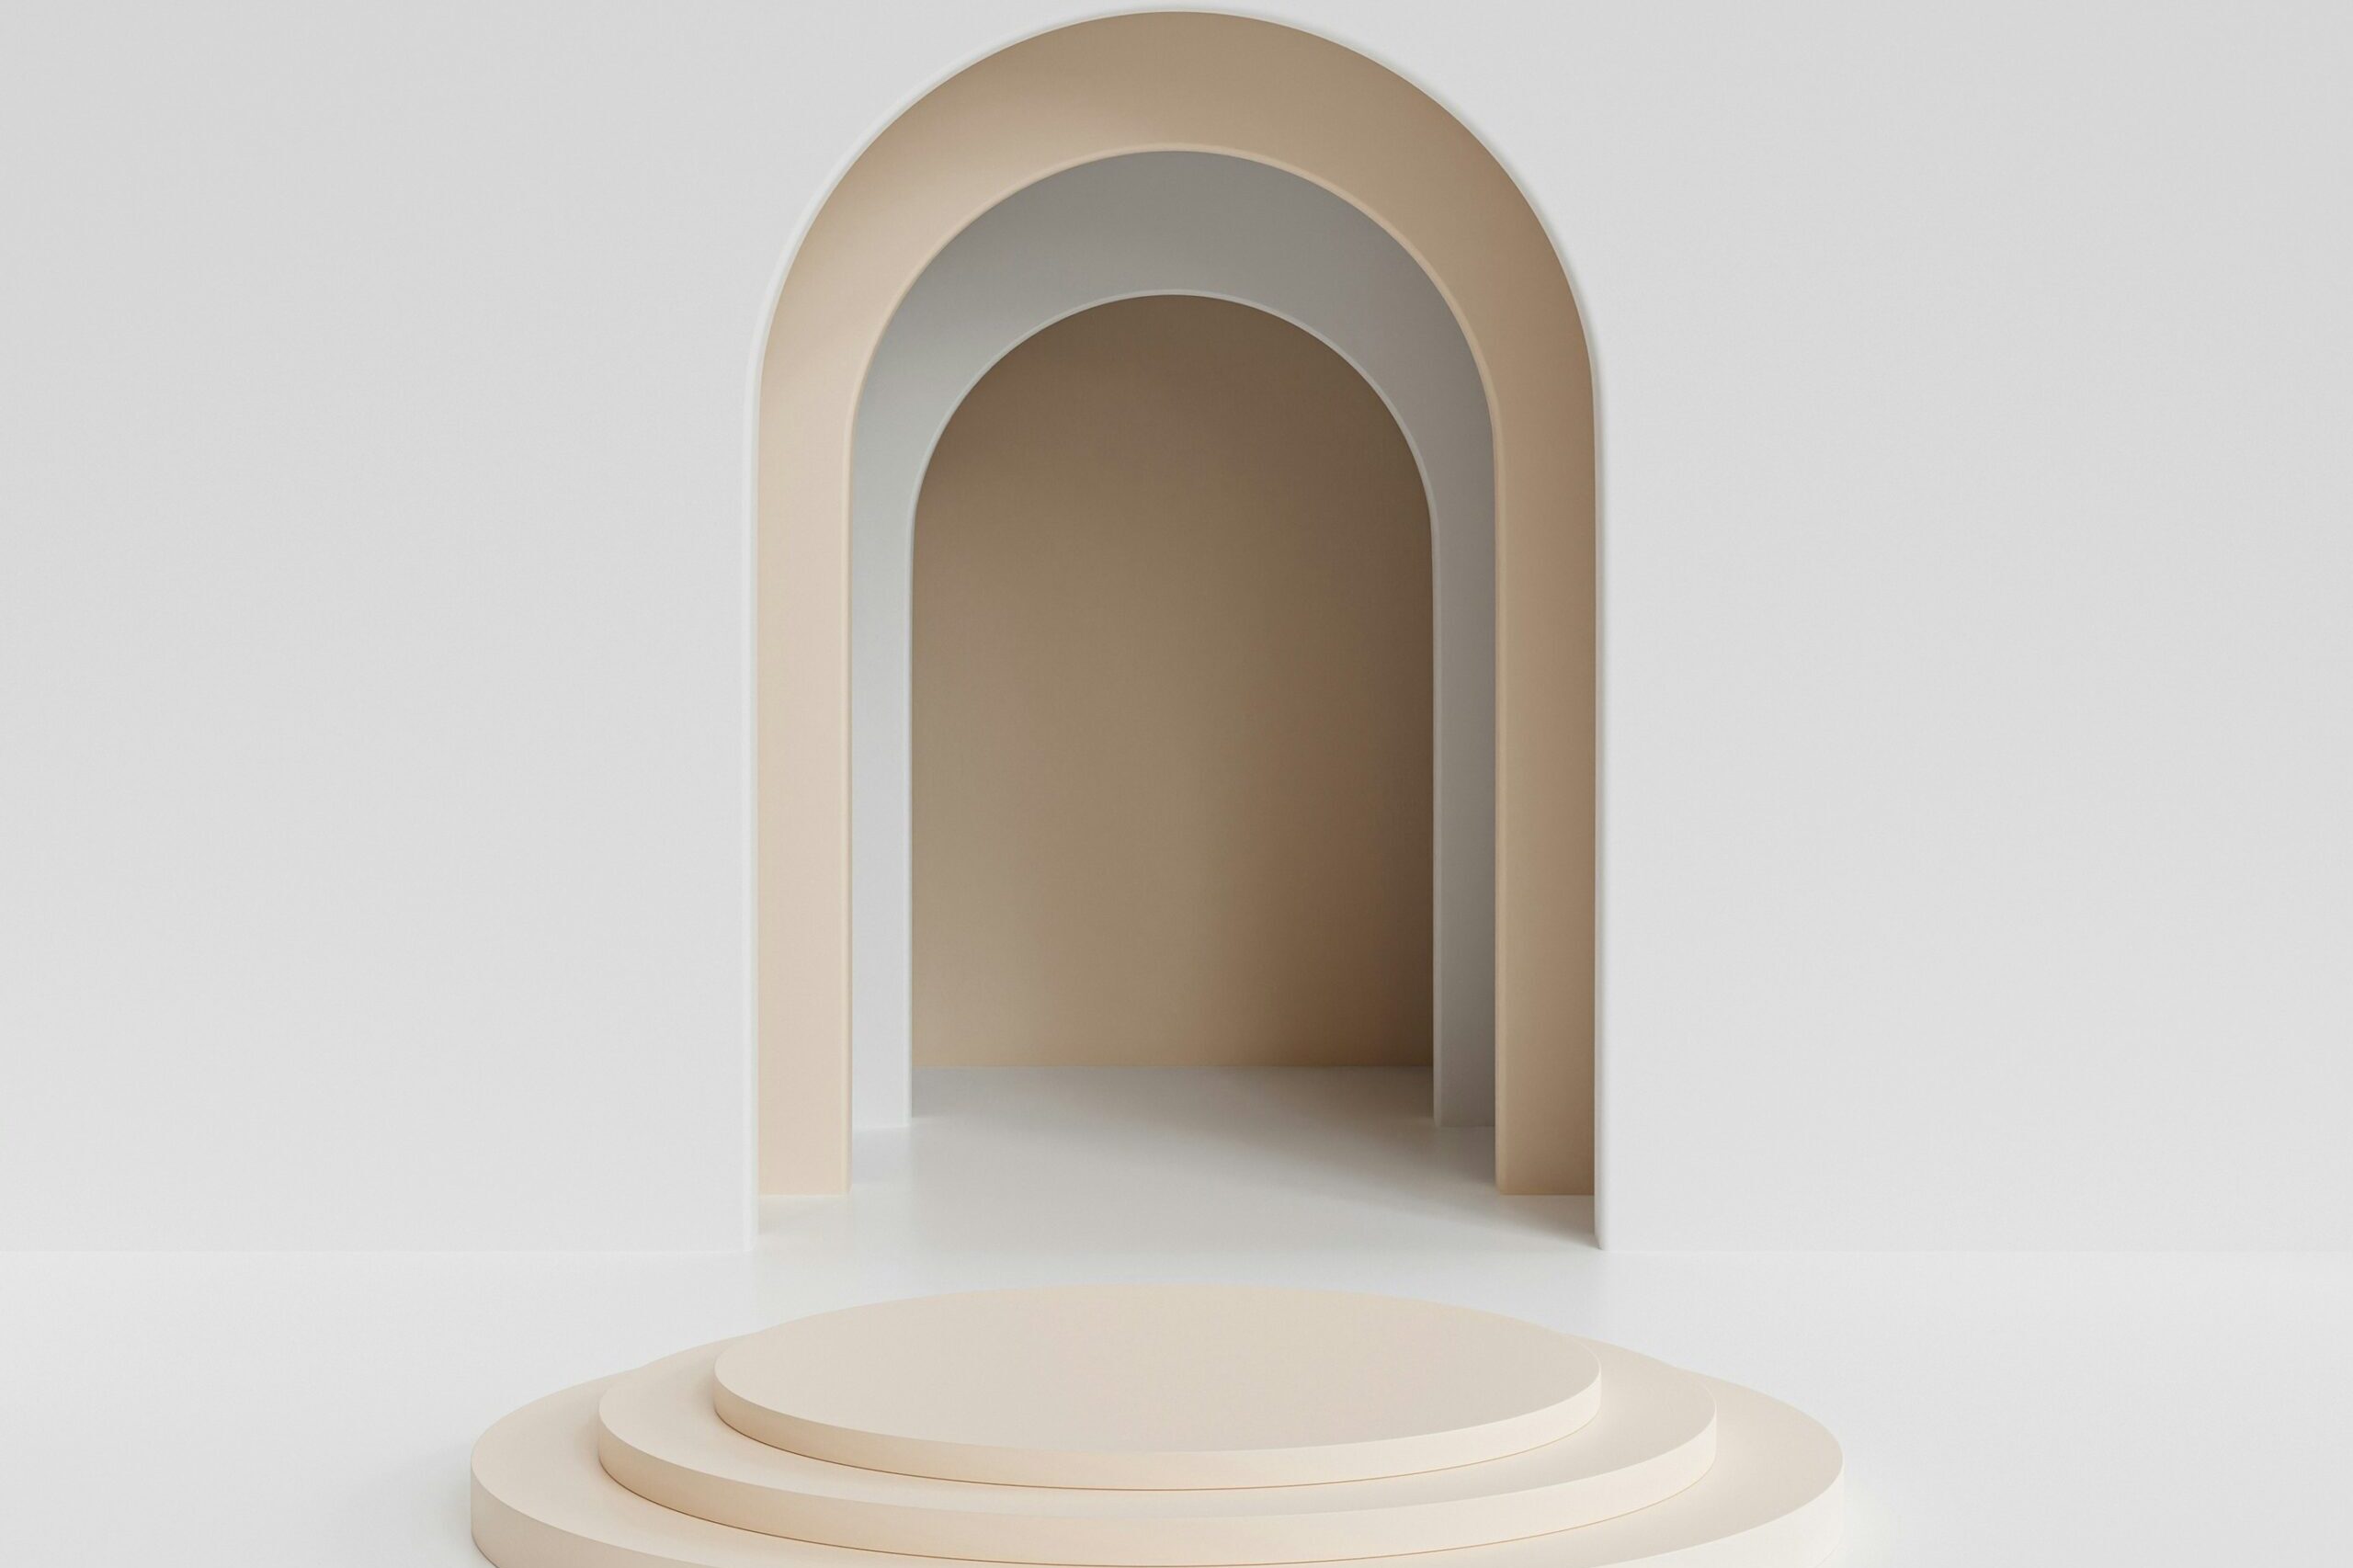 en abstrakt vit tunnel med ett odefinierat slut